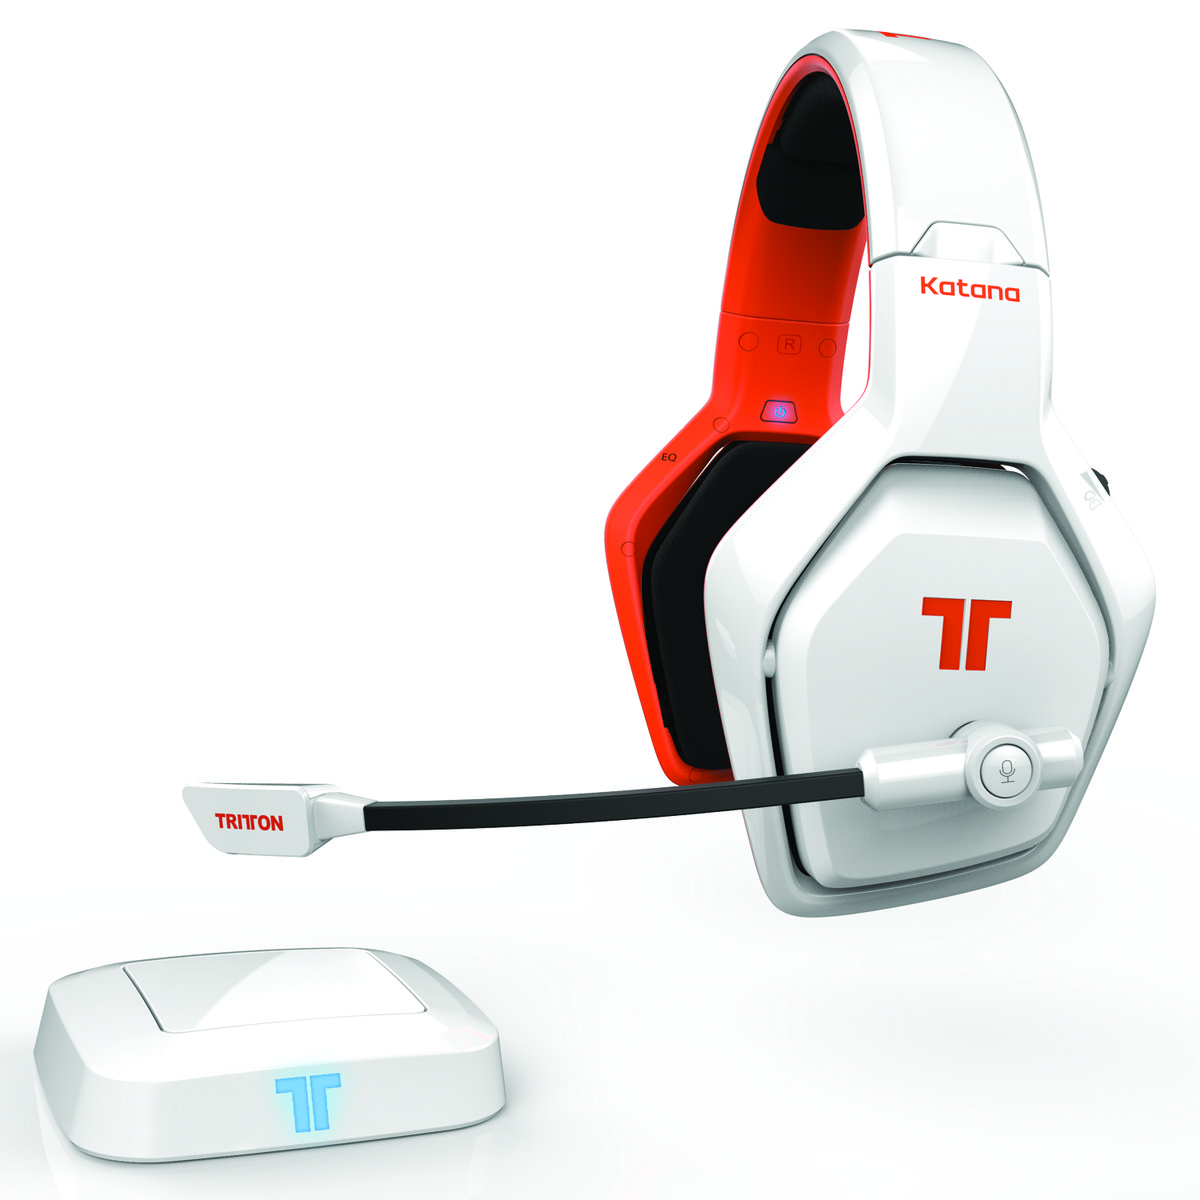 Tritton Katana 7.1 Wireless Gaming Headset (wit) (PC/PS4/XboxOne) (PC), Tritton